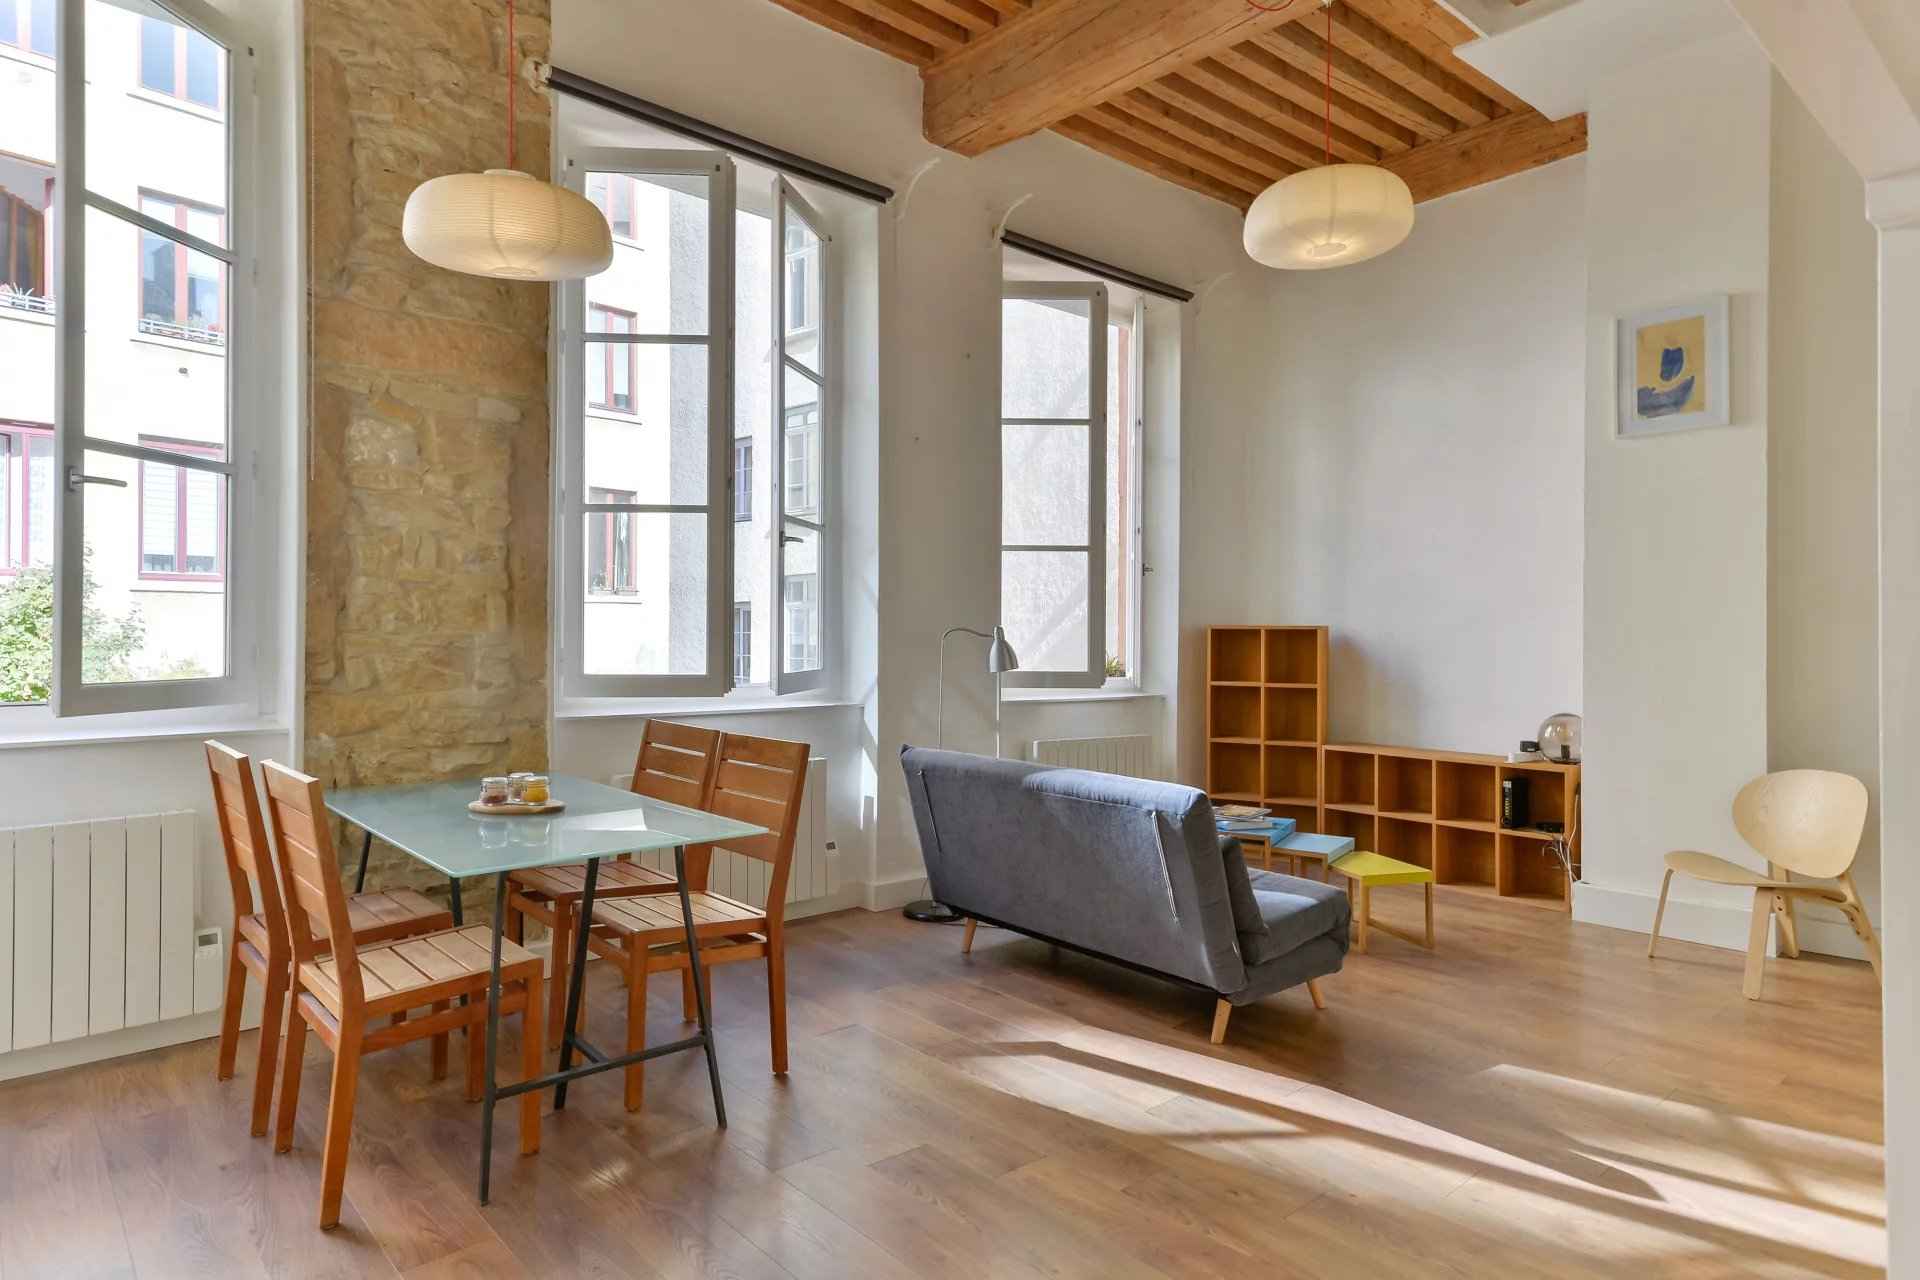 Appartement - Barnes Lyon, agence immobilière de prestige, pièce de vie d'un appartement de 42,55 m² aux pentes de la Croix Rousse à Lyon